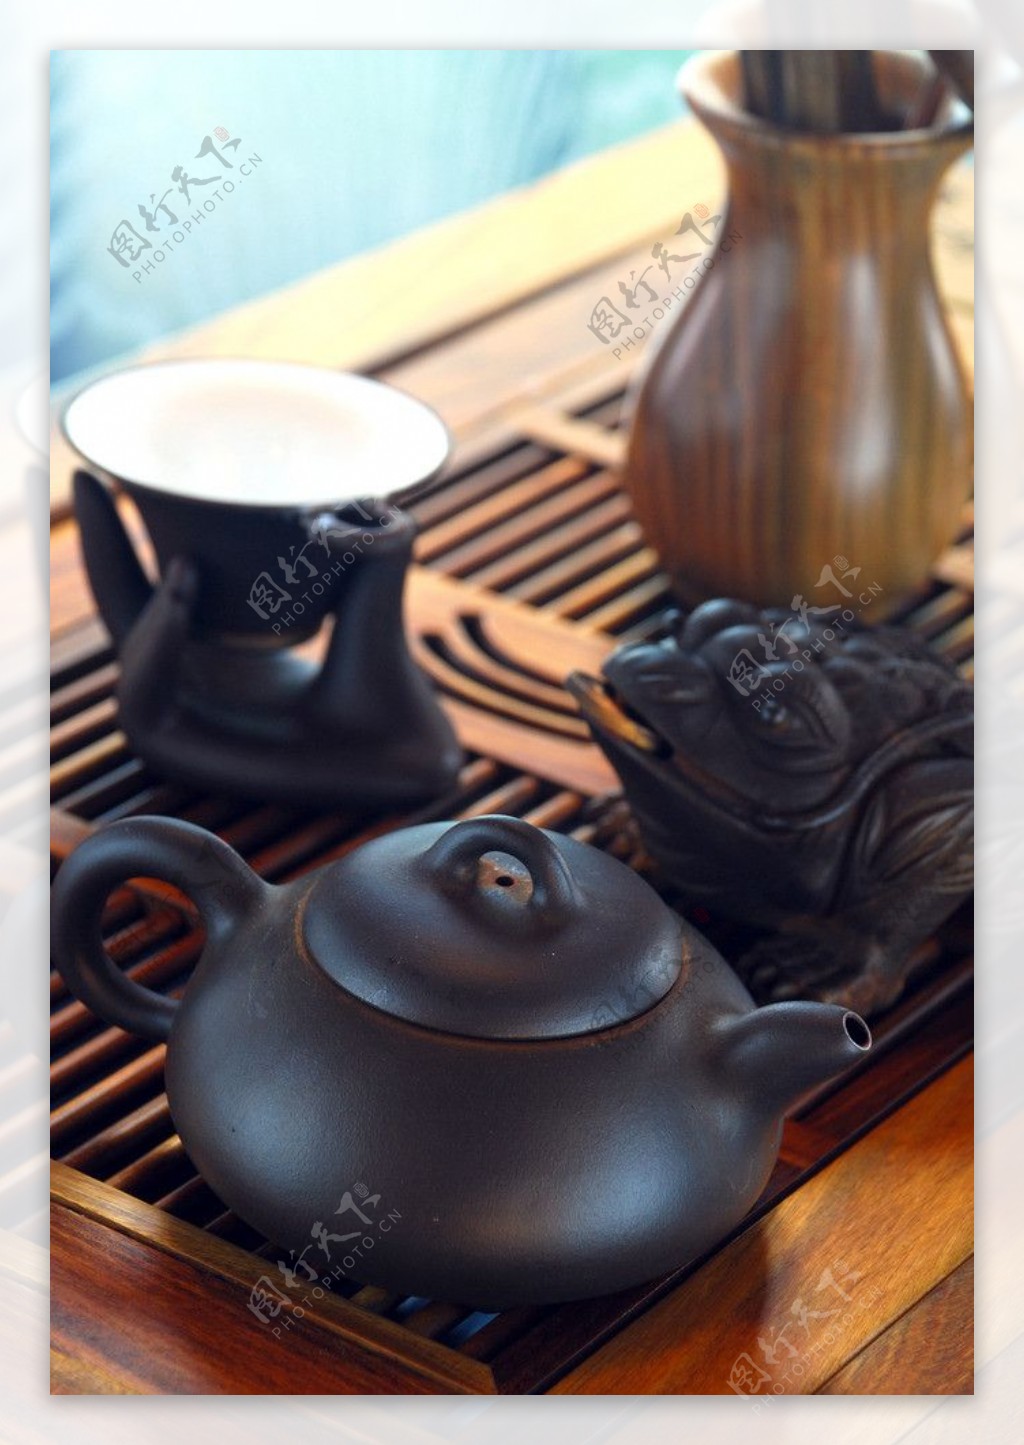 茶壶茶杯图片